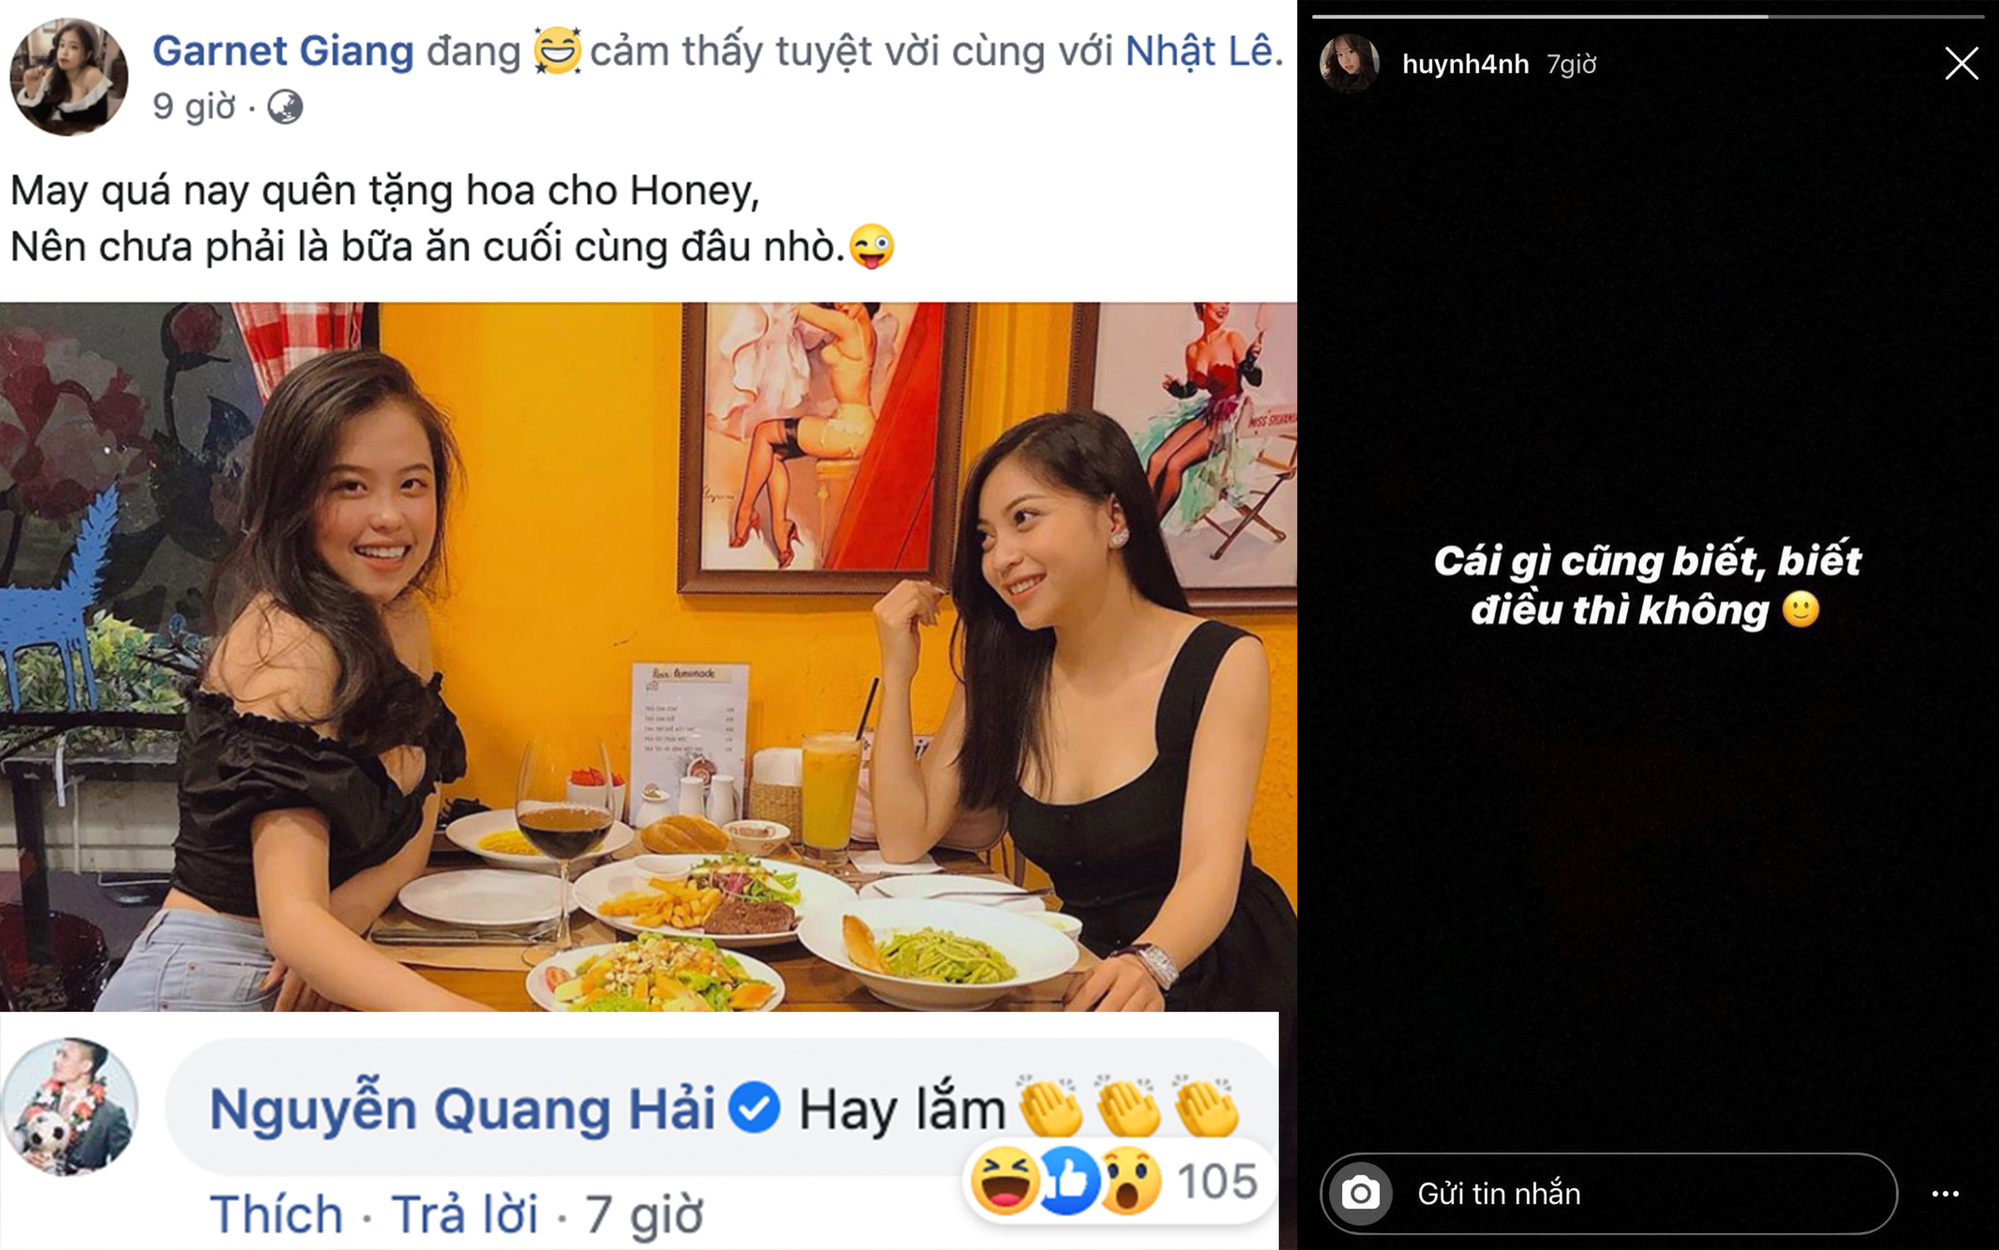 Quang Hải bình luận trong bài viết tag tên Nhật Lê, Huỳnh Anh liền đăng status ẩn ý: "Cái gì cũng biết, biết điều thì không"